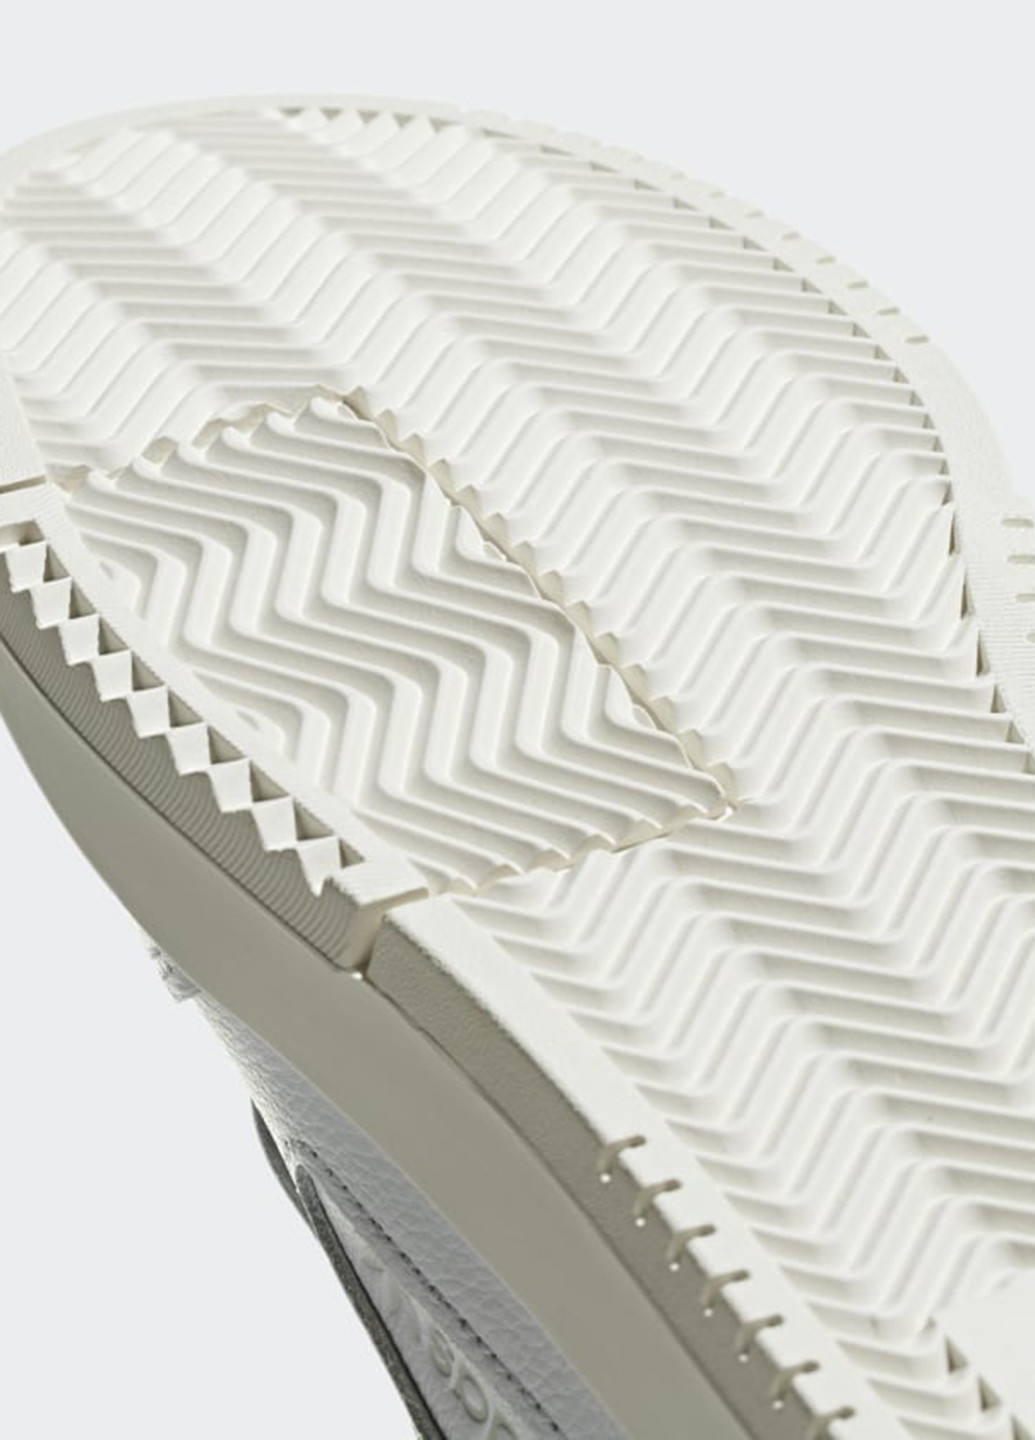 Білі Осінні кросівки adidas SC Premiere